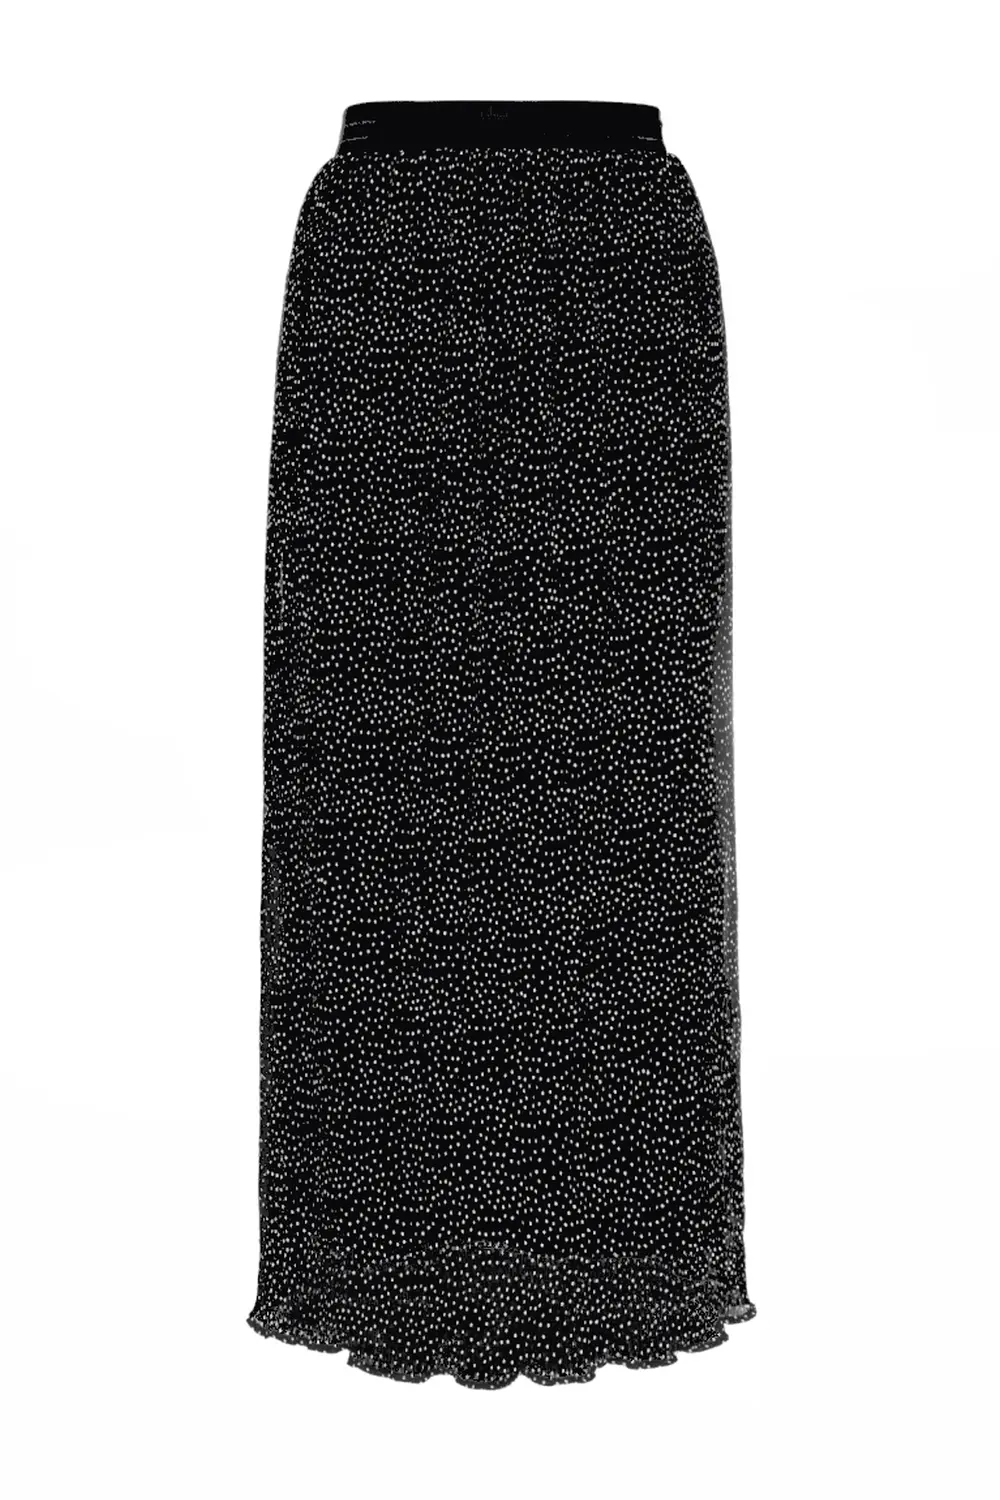 długa spódnica plisowana czarna w groszki z szyfonu polska produkcja Vito Vergelis spódnica maxi